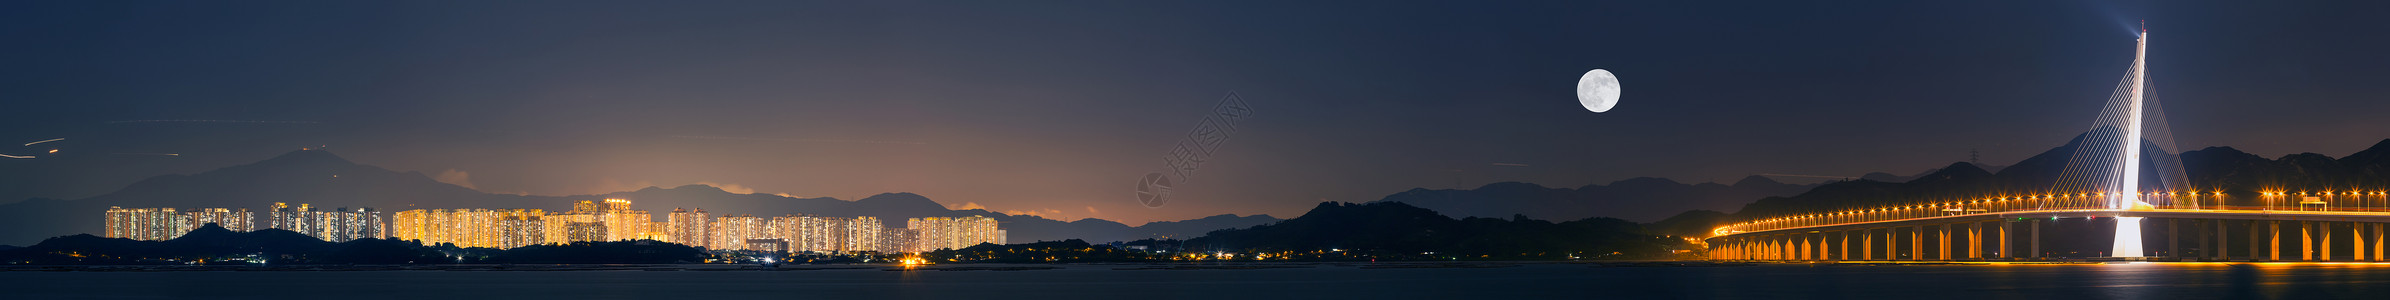 金海湾红树林深圳湾跨海大桥城市风光夜景全景图背景